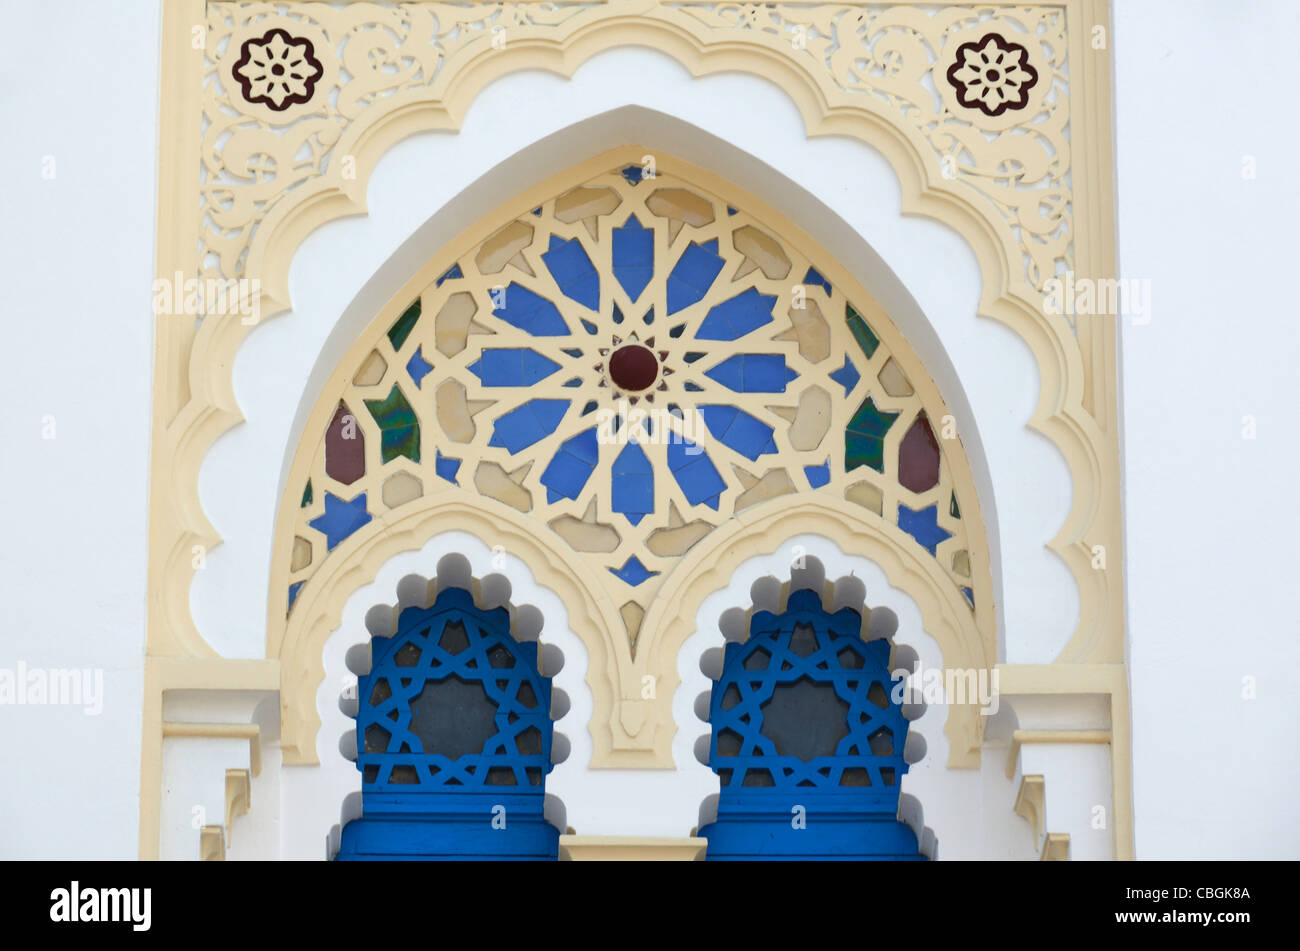 Geometrische Muster der orientalische Fenster, Villa Tunisienne (1884),  orientalische, tunesischen oder maurischen Stil Haus Hyères Provence  Frankreich Stockfotografie - Alamy